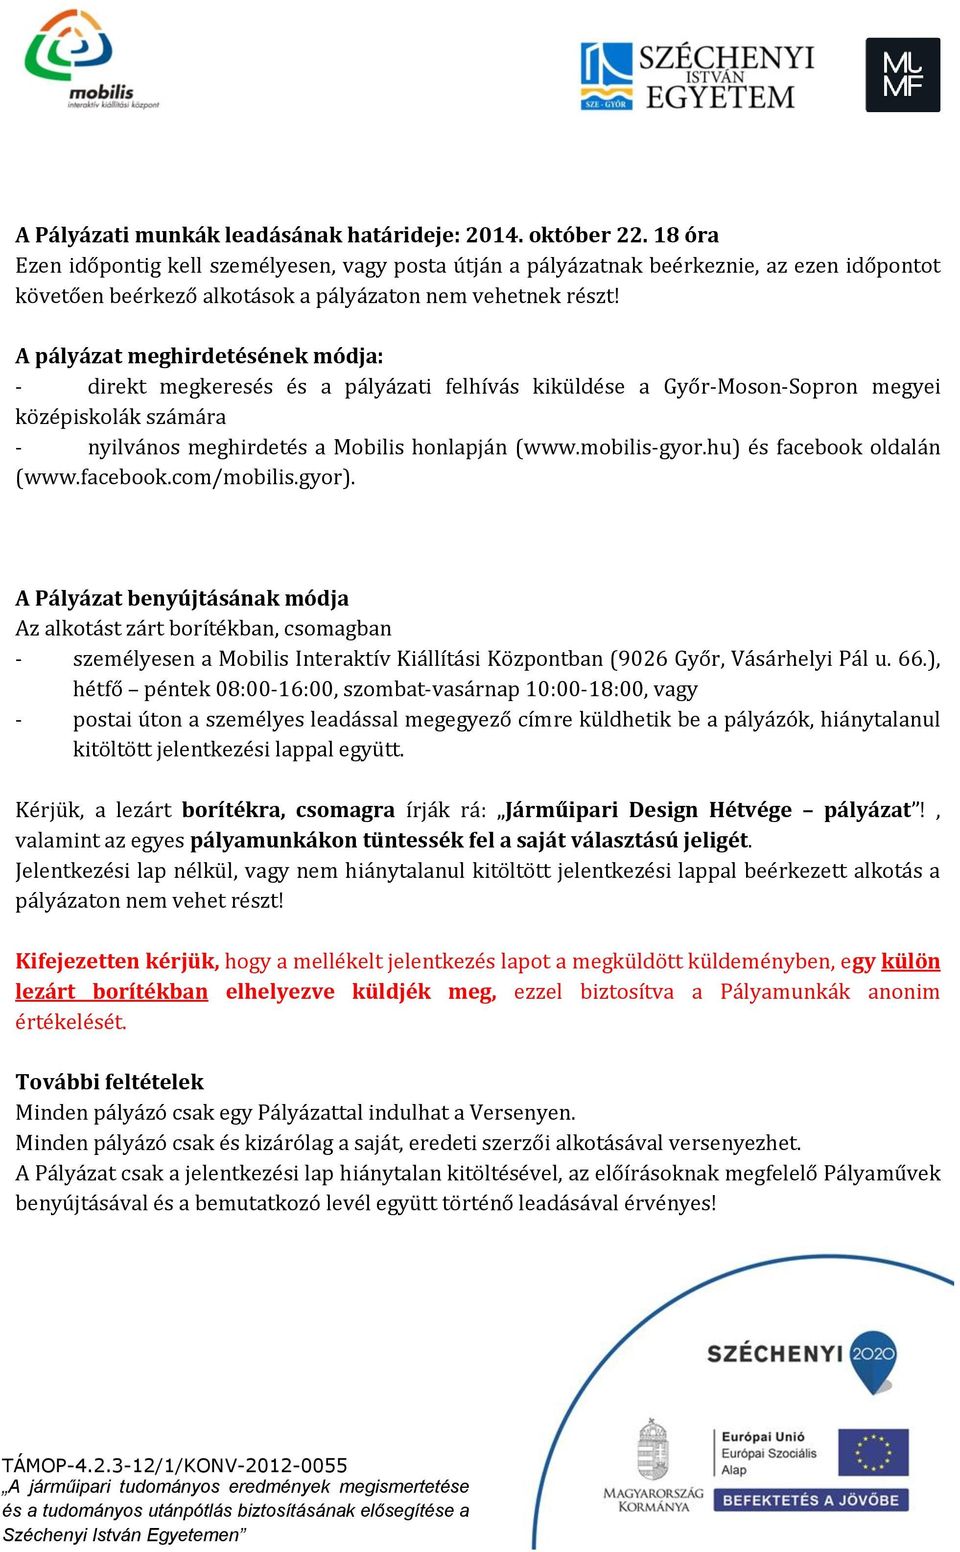 A pályázat meghirdetésének módja: - direkt megkeresés és a pályázati felhívás kiküldése a Győr-Moson-Sopron megyei középiskolák számára - nyilvános meghirdetés a Mobilis honlapján (www.mobilis-gyor.